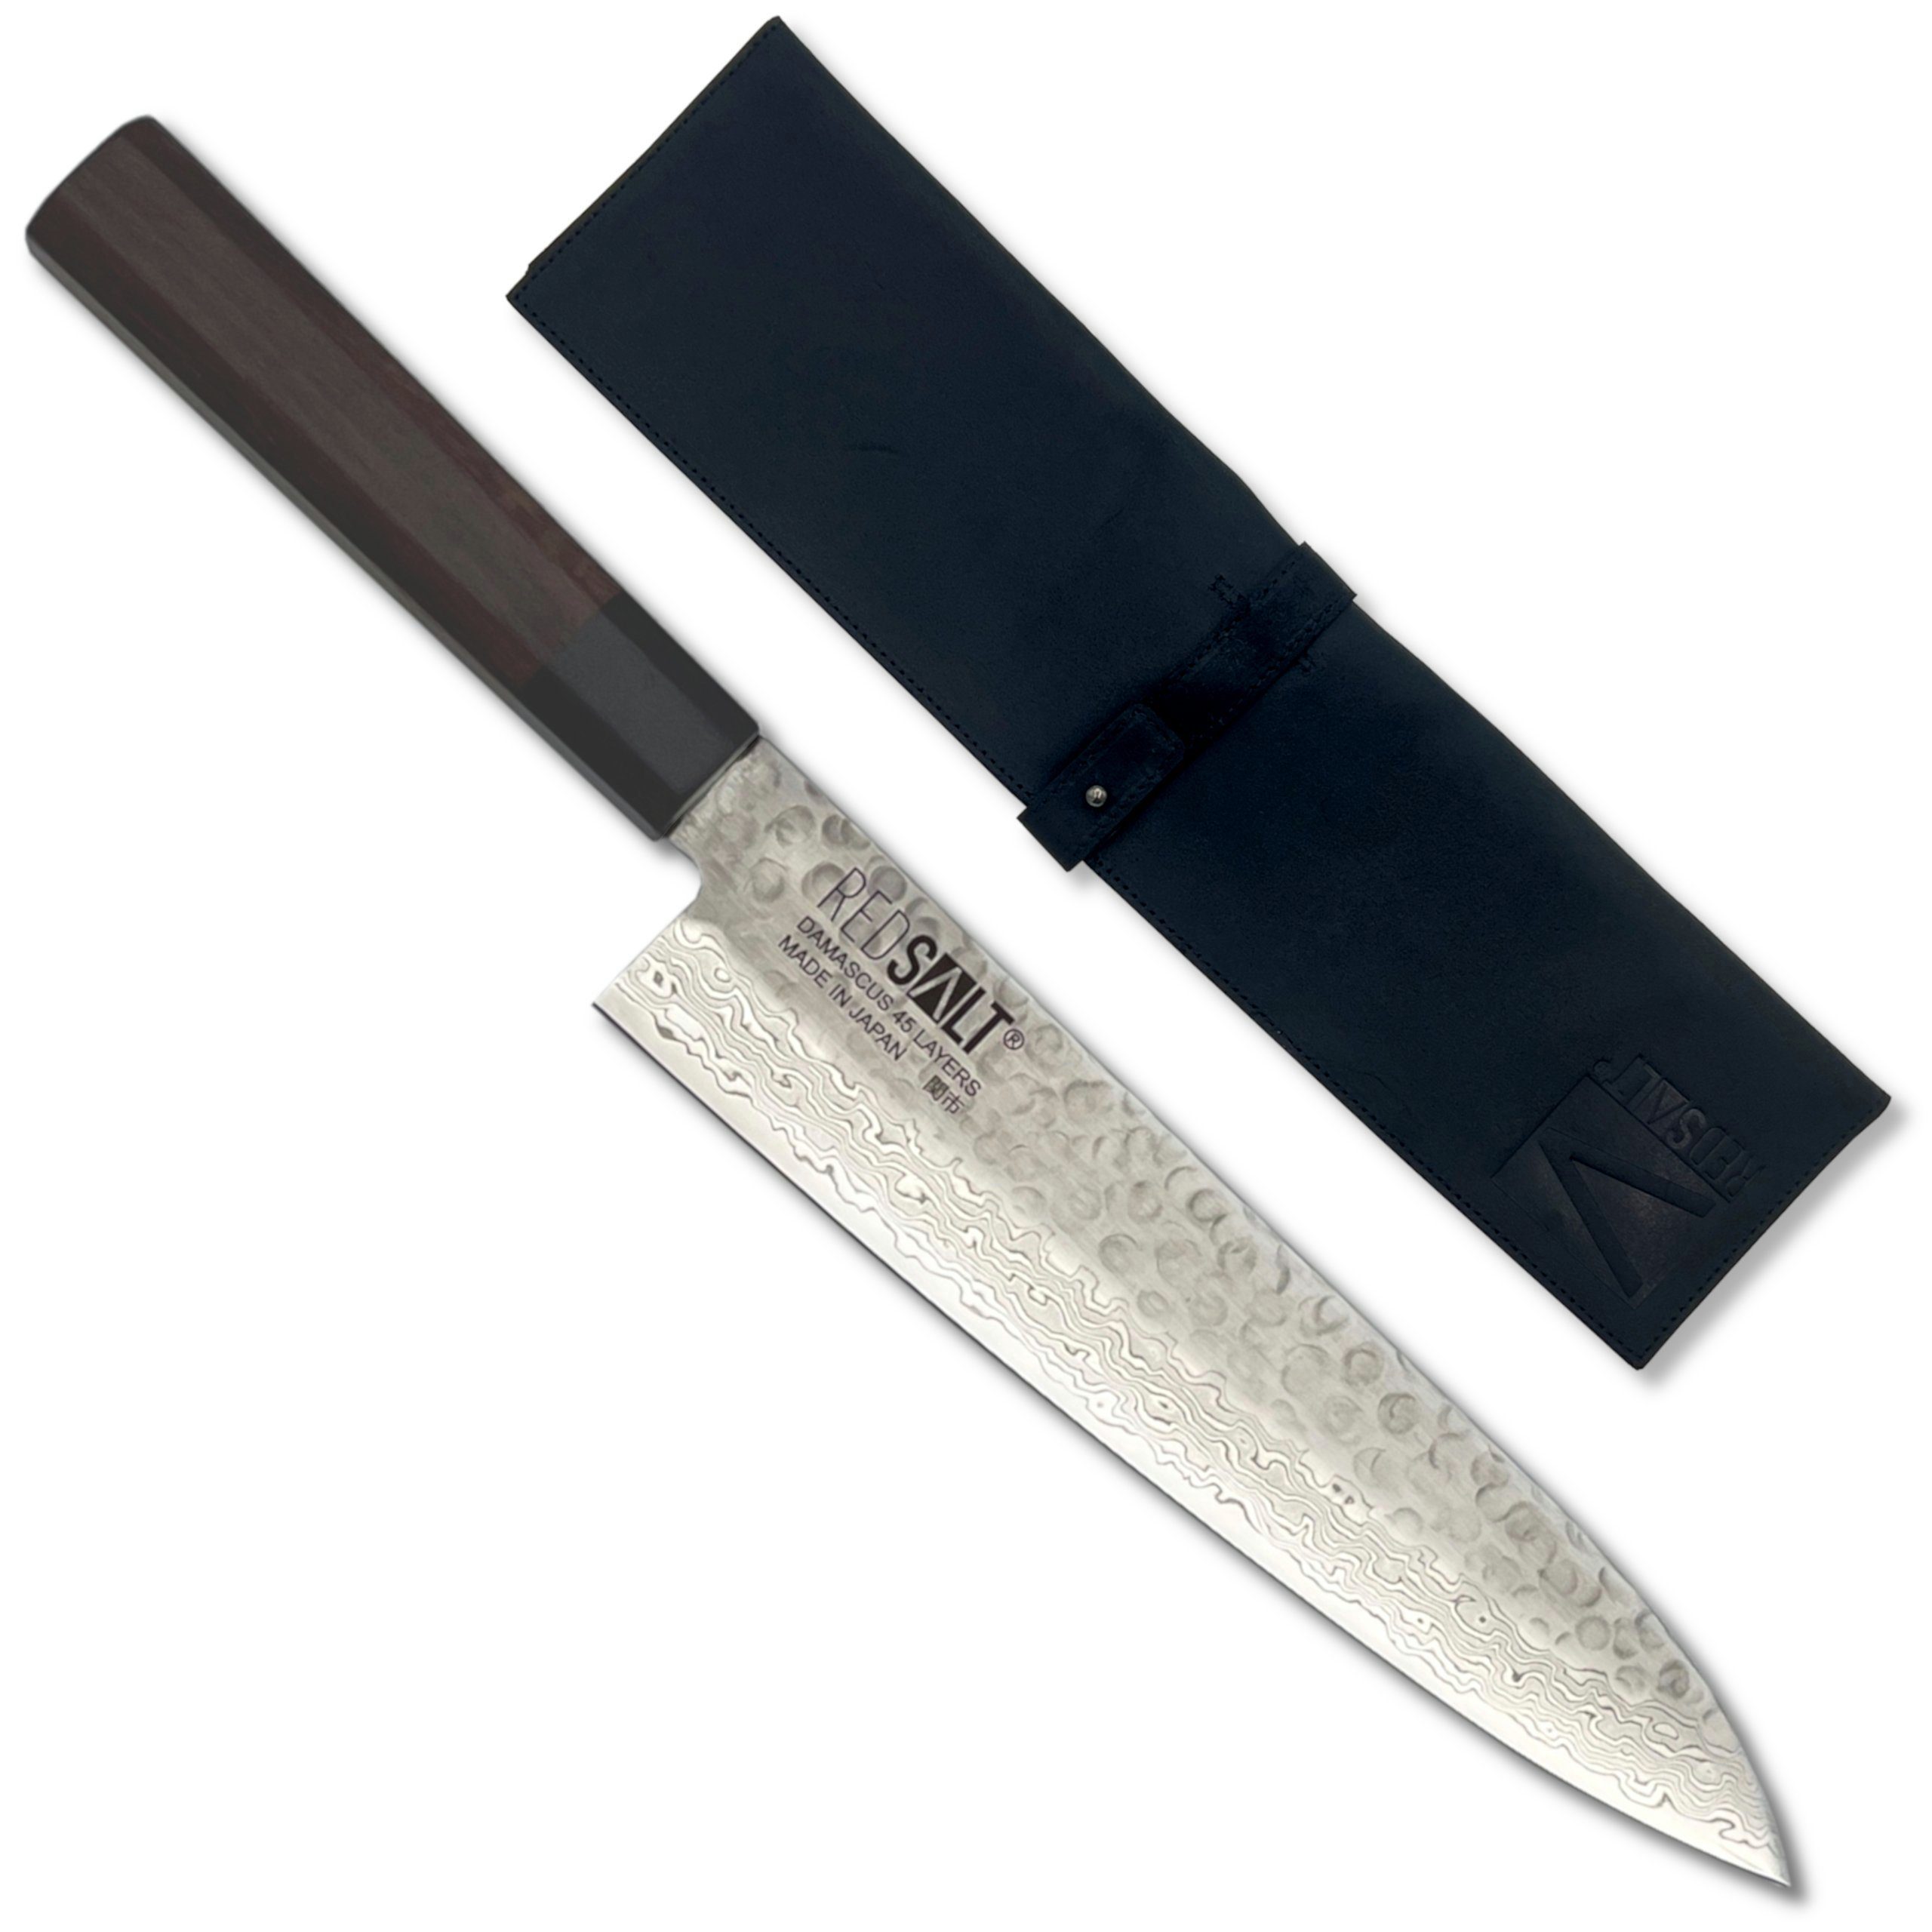 REDSALT® Damastmesser GYUTO 21cm Profi Küchenmesser mit Ledertasche & Klingenschutz, handgerfertigt, Made in Japan